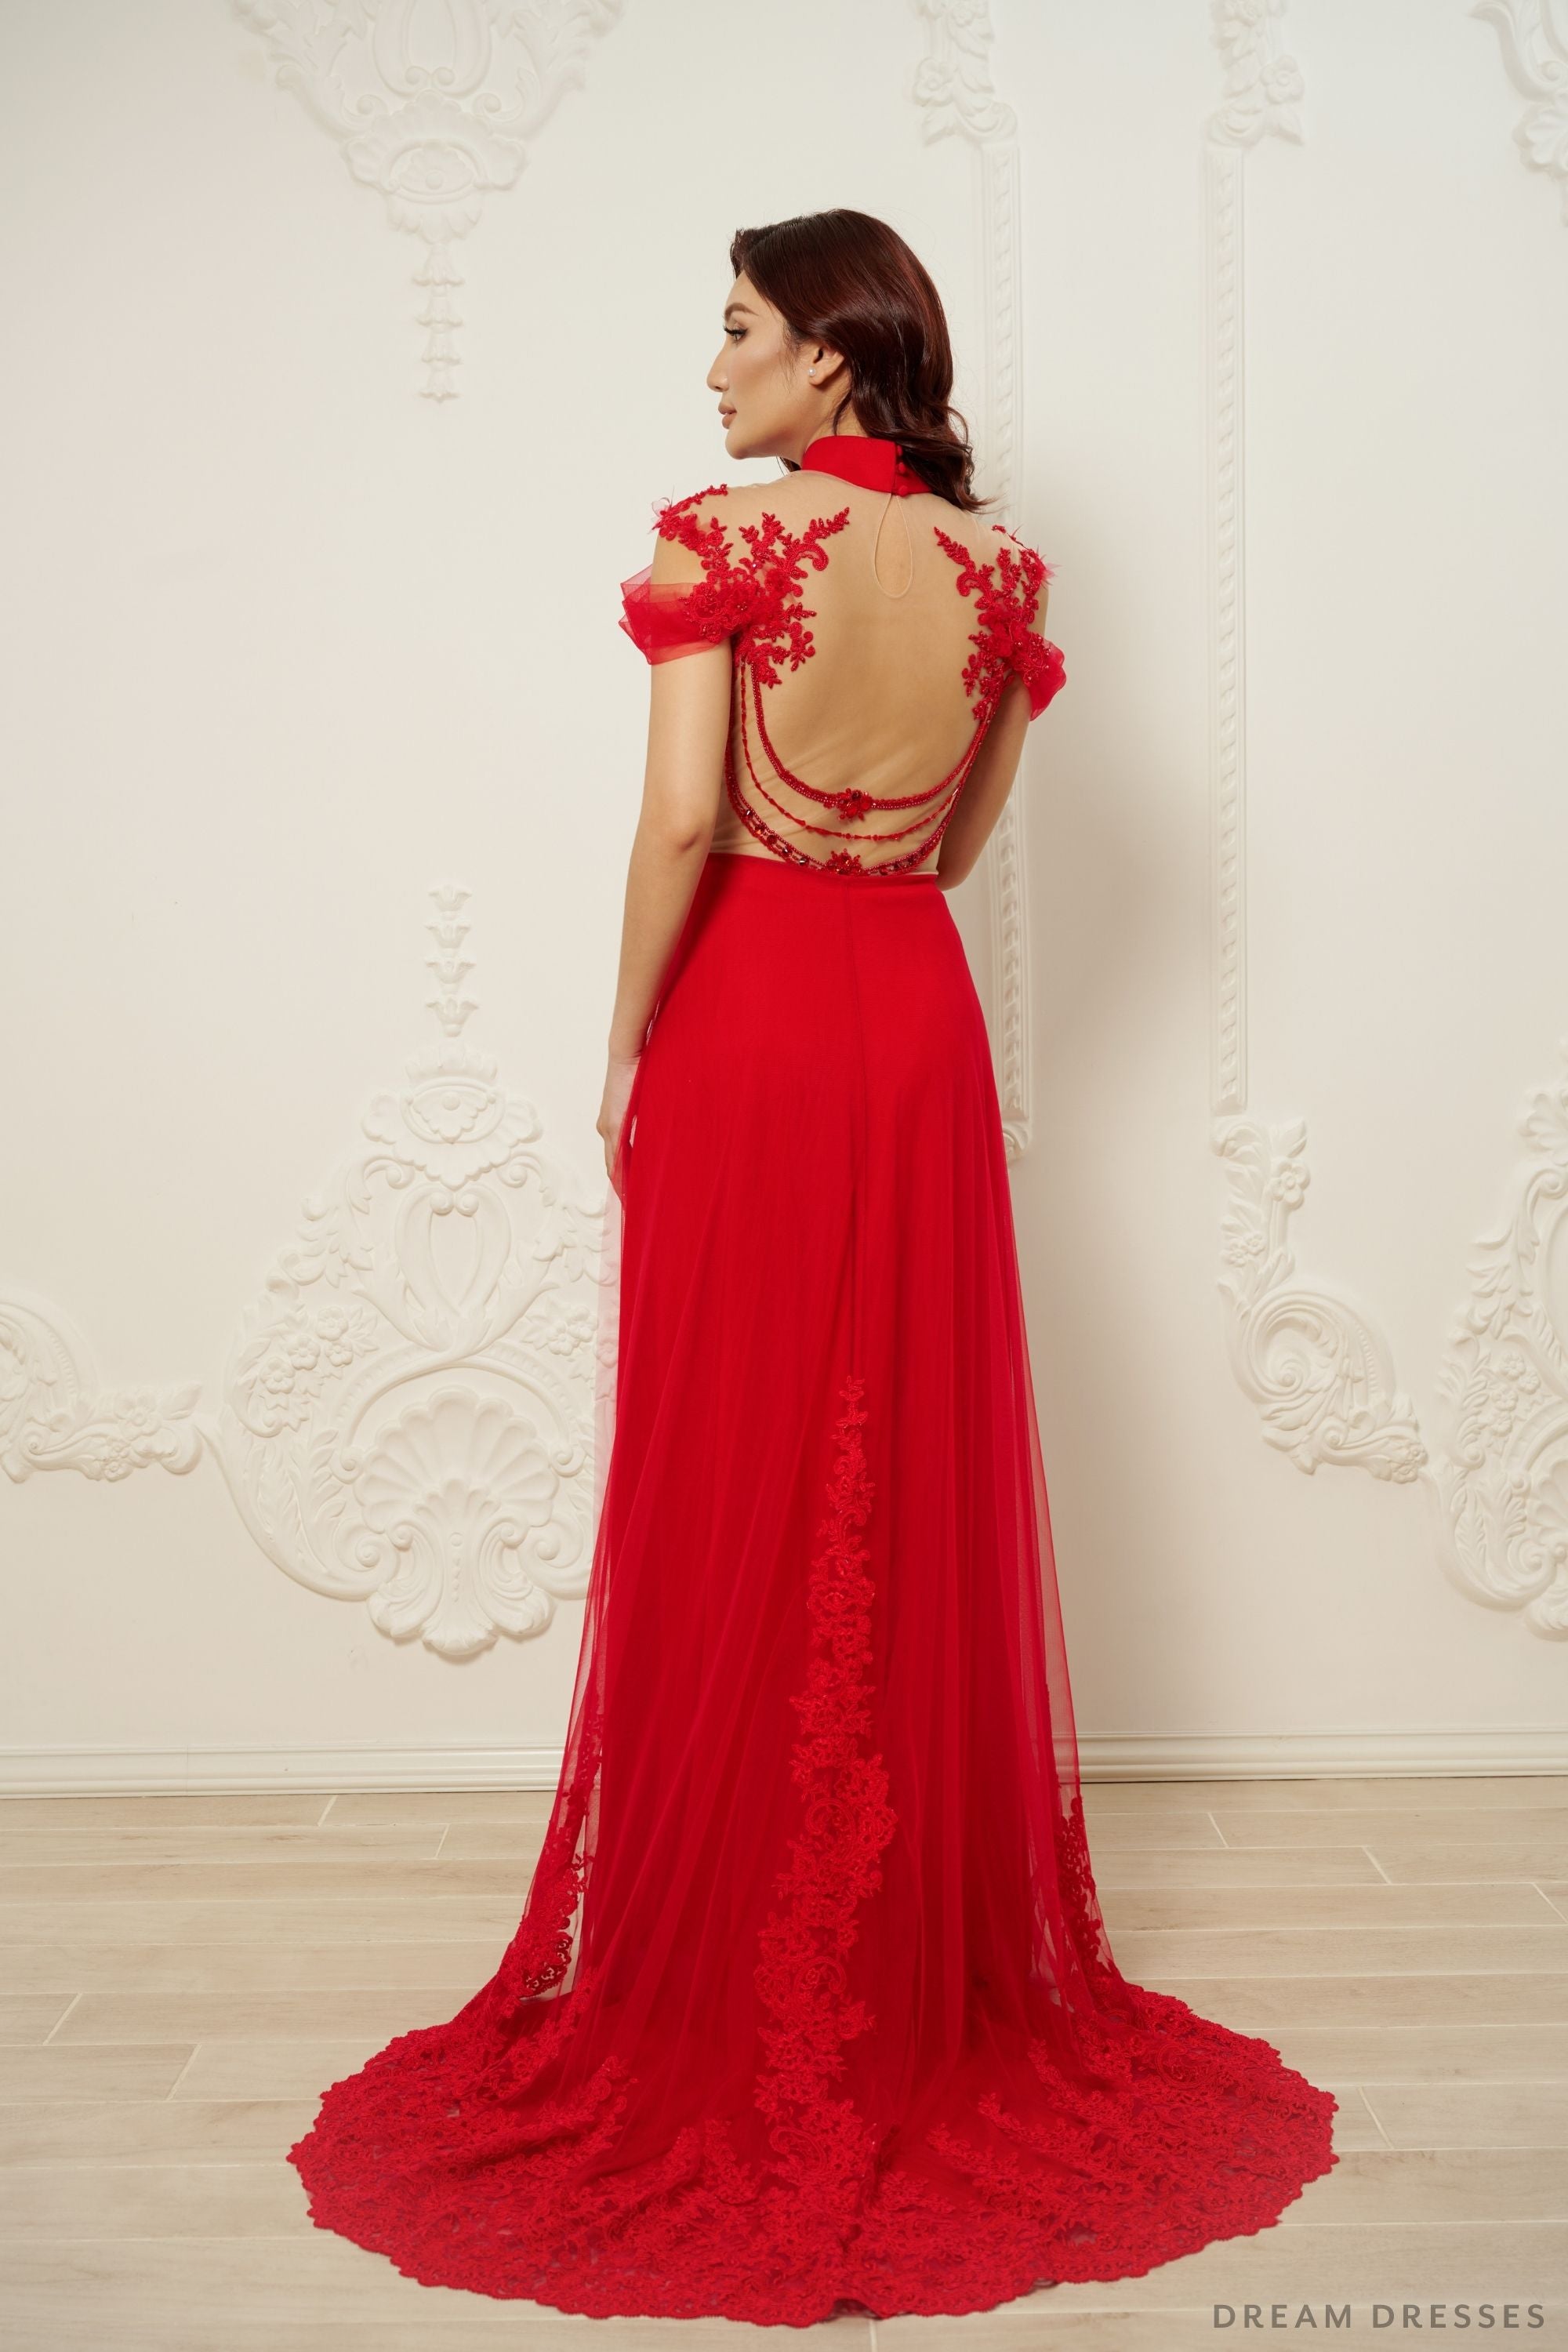 Red Bridal Ao Dai | Modern Vietnamese Bridal Dress (#EHUANG)